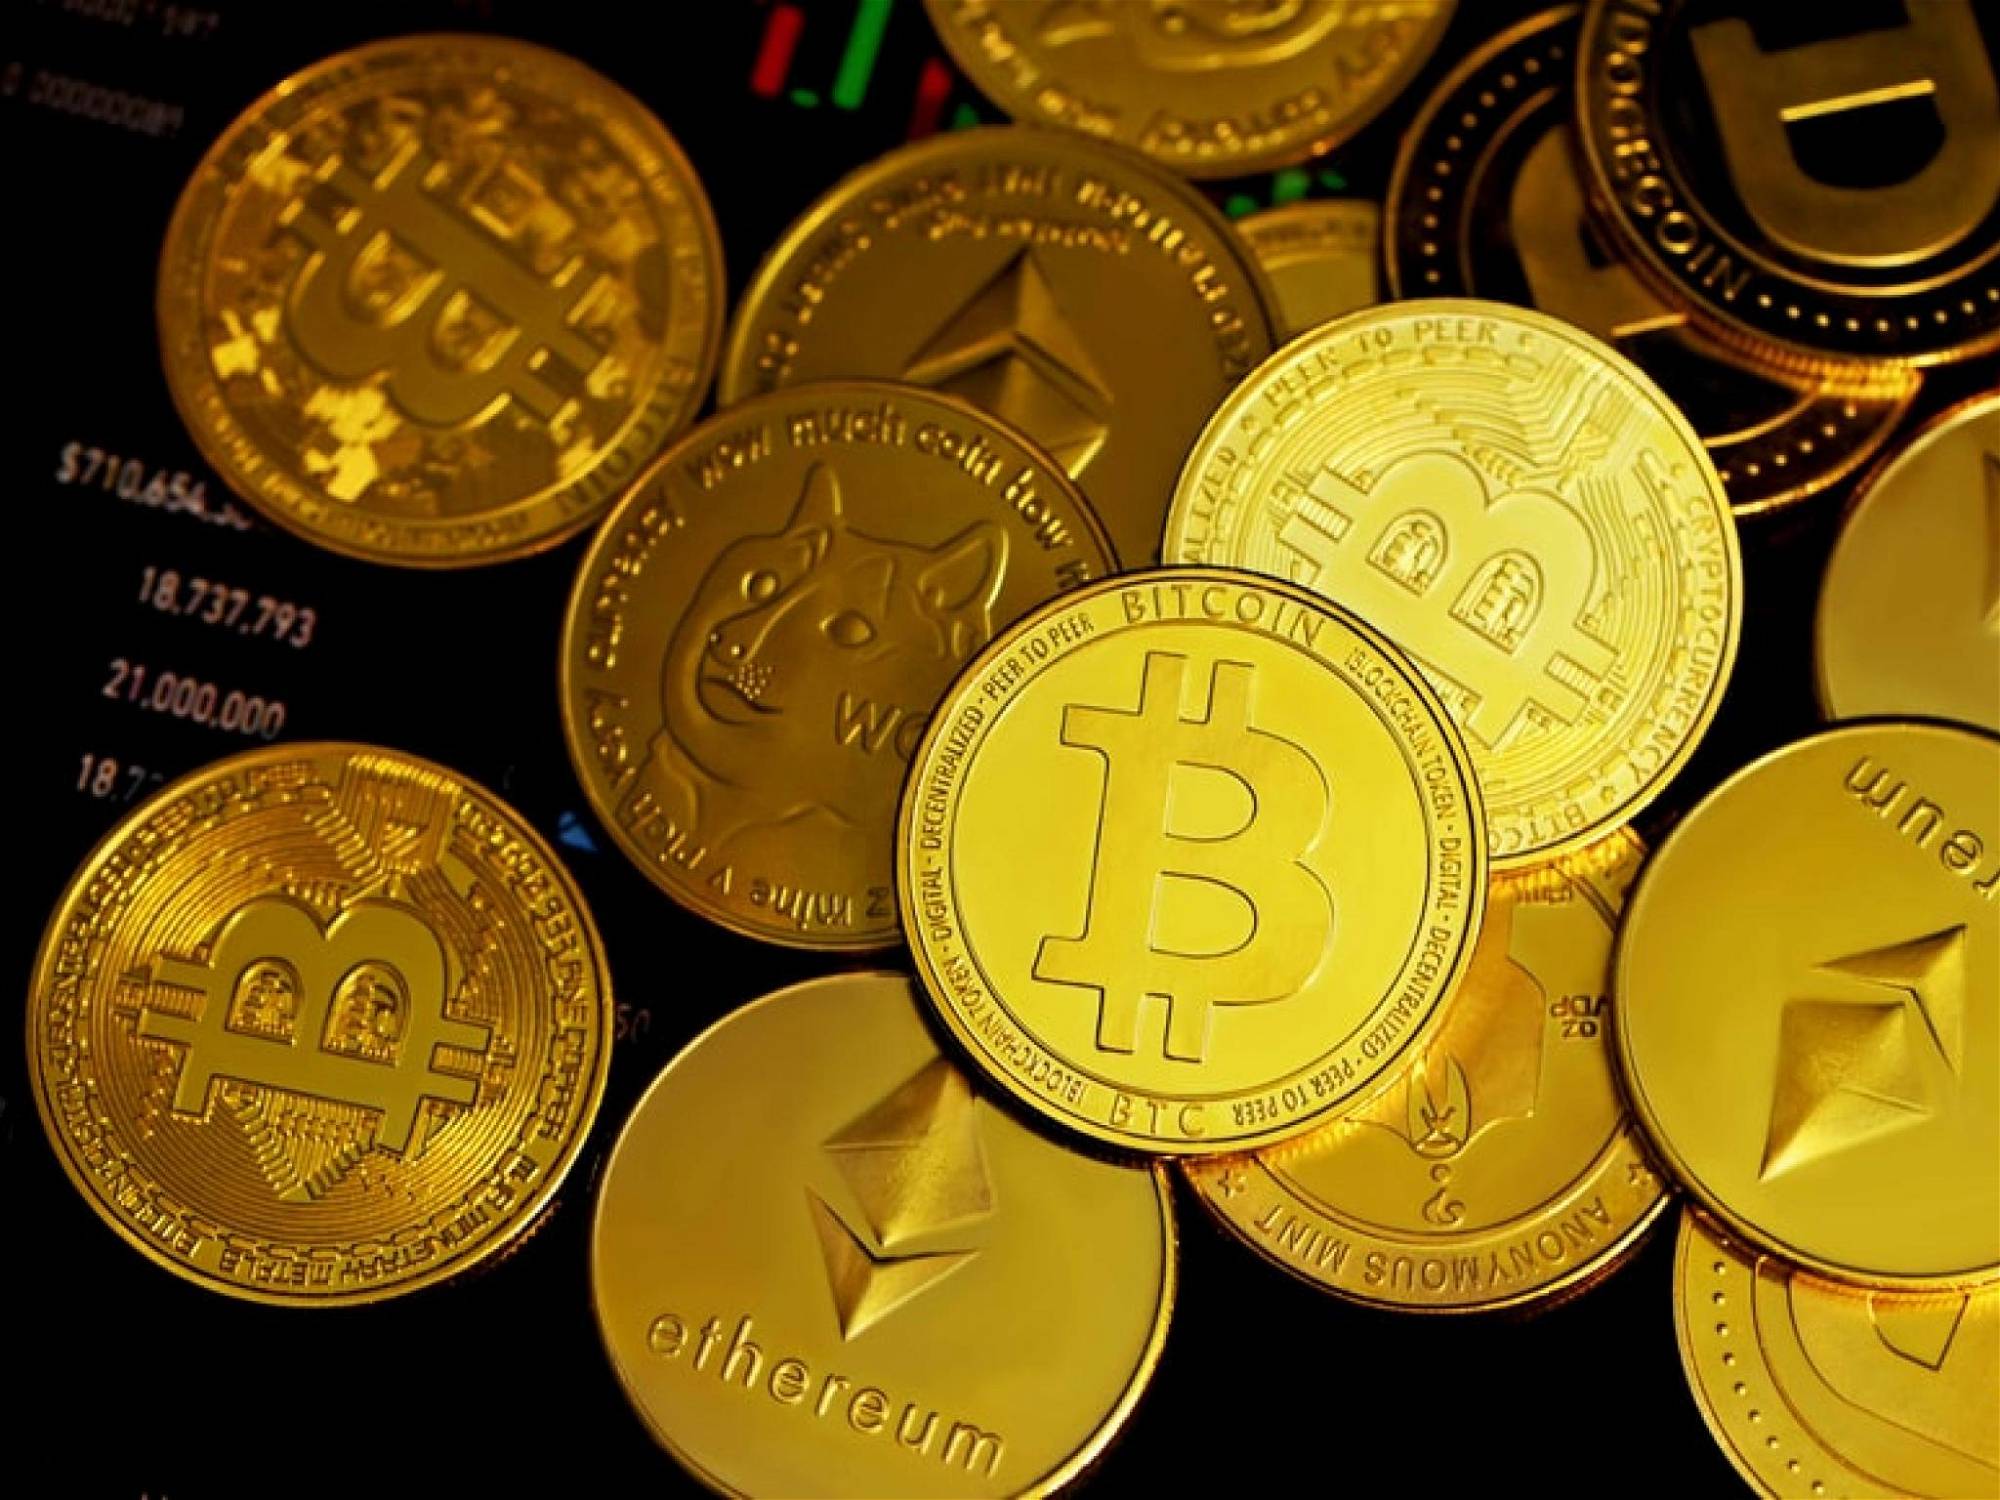 welche altcoins haben zukunft was passiert wenn man 100 € in bitcoin investiert?